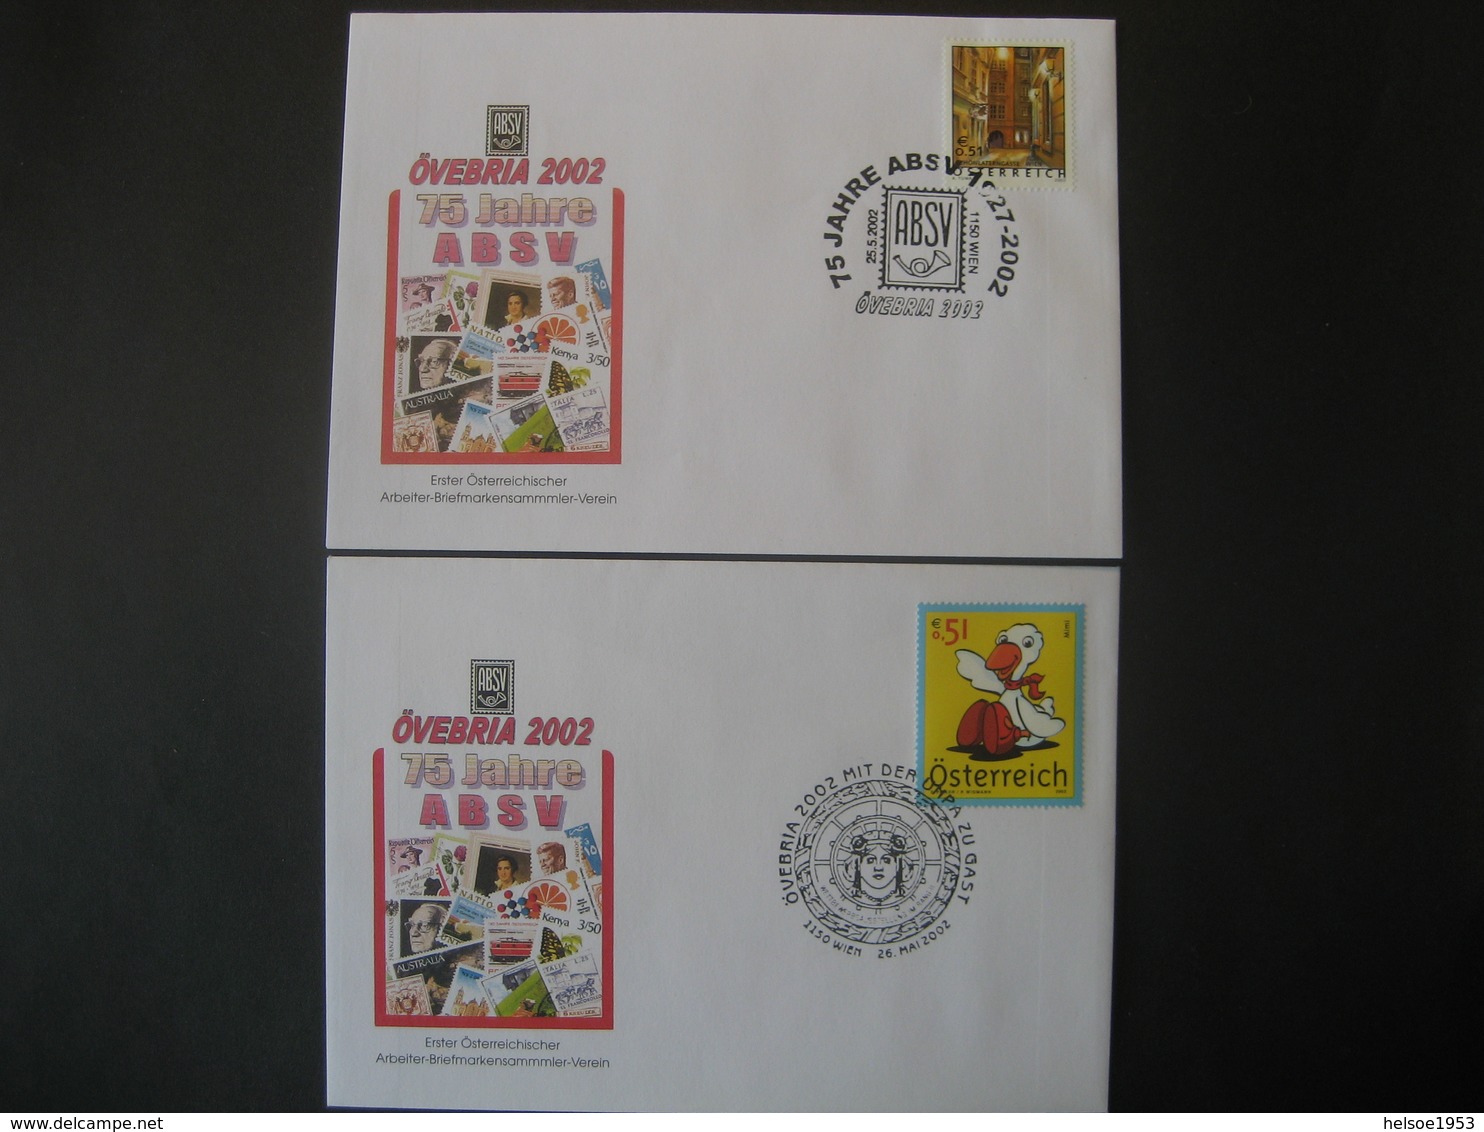 Österreich 2002- 2 Belege Övebria 2002 75 Jahre ABSV 1927-2002, Mit Der UMPA Zu Gast - Covers & Documents